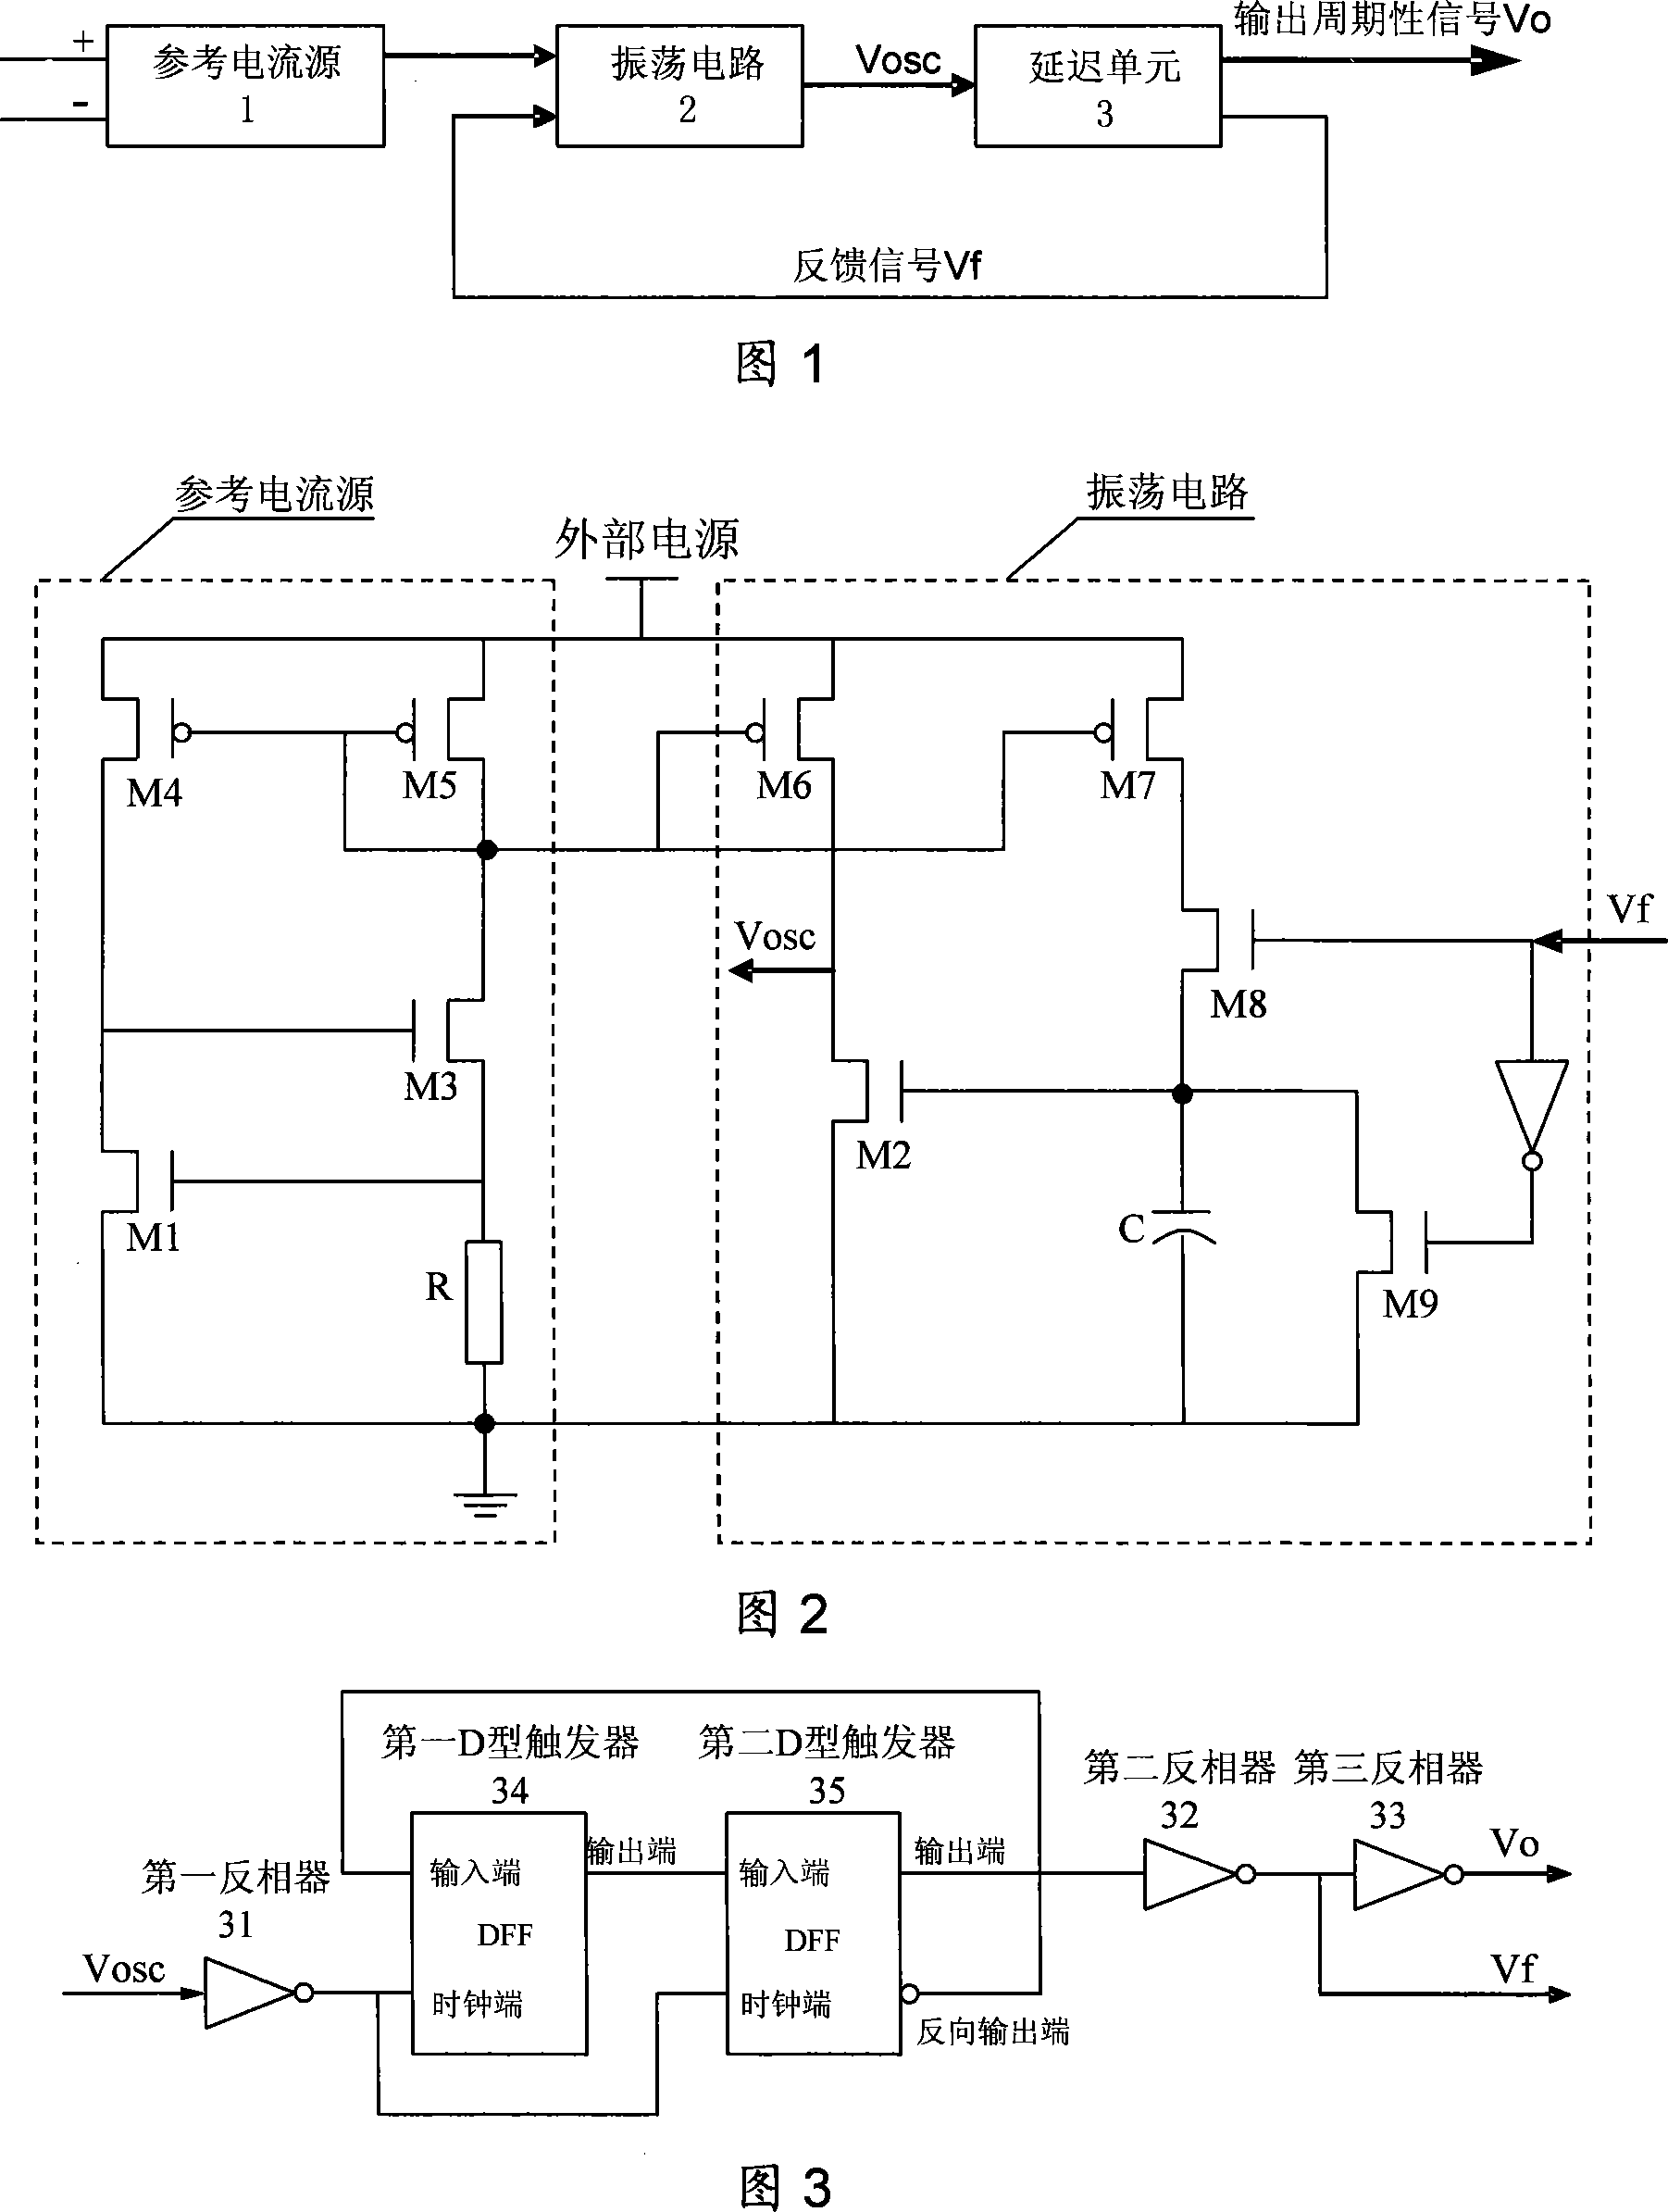 A novel CMOS oscillator circuit